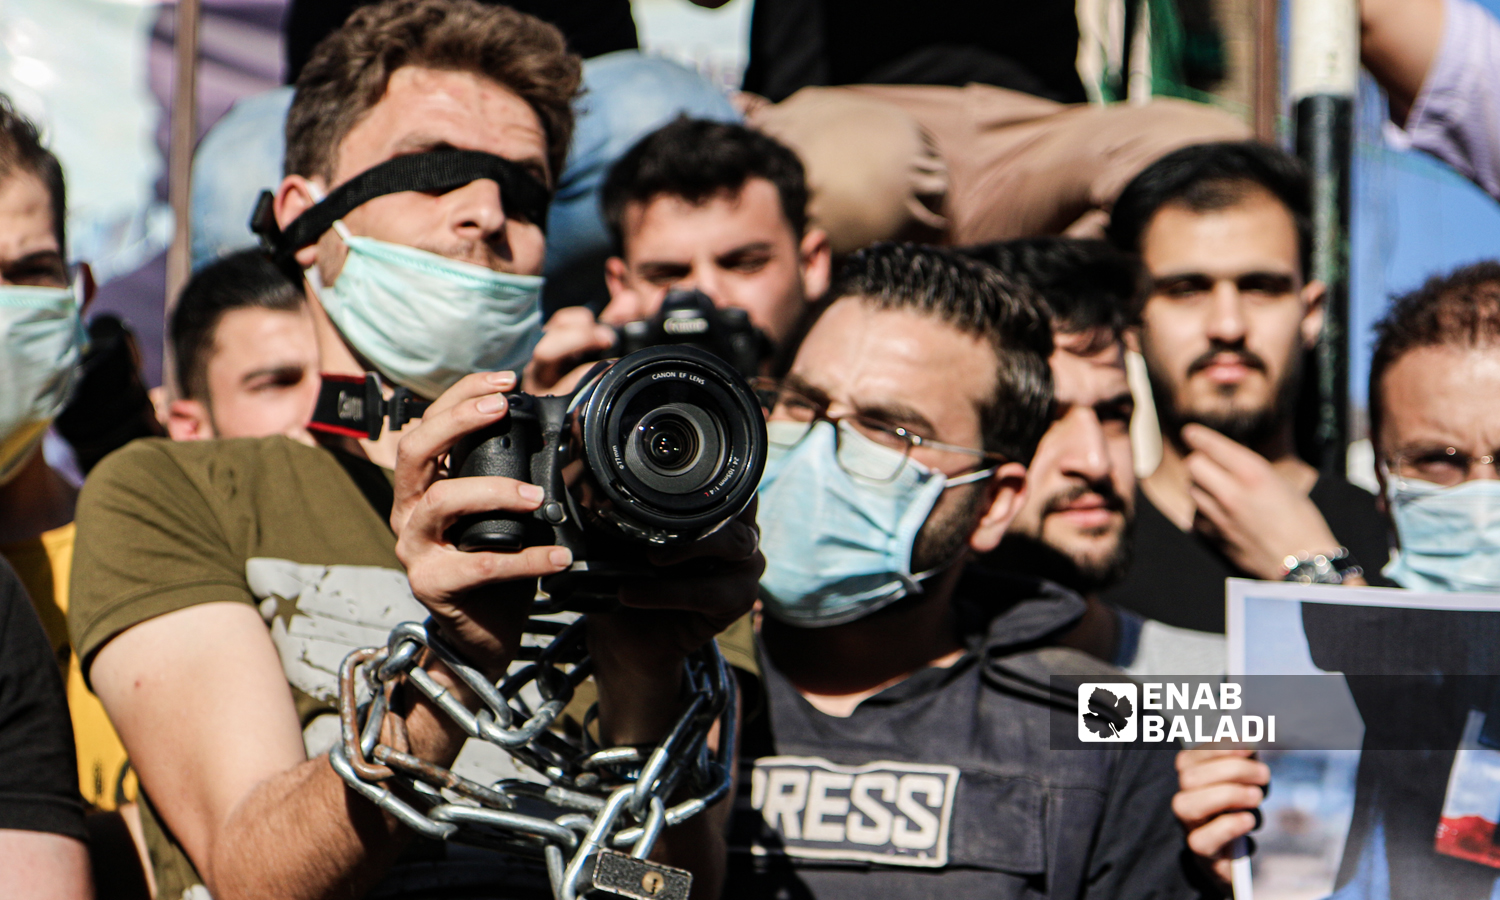 وقفة للناشطين السورين في مدينة إدلب تضامنًا مع حرية الصحفيين - 10 أيار 2020 (عنب بلدي/ يوسف غريبي)